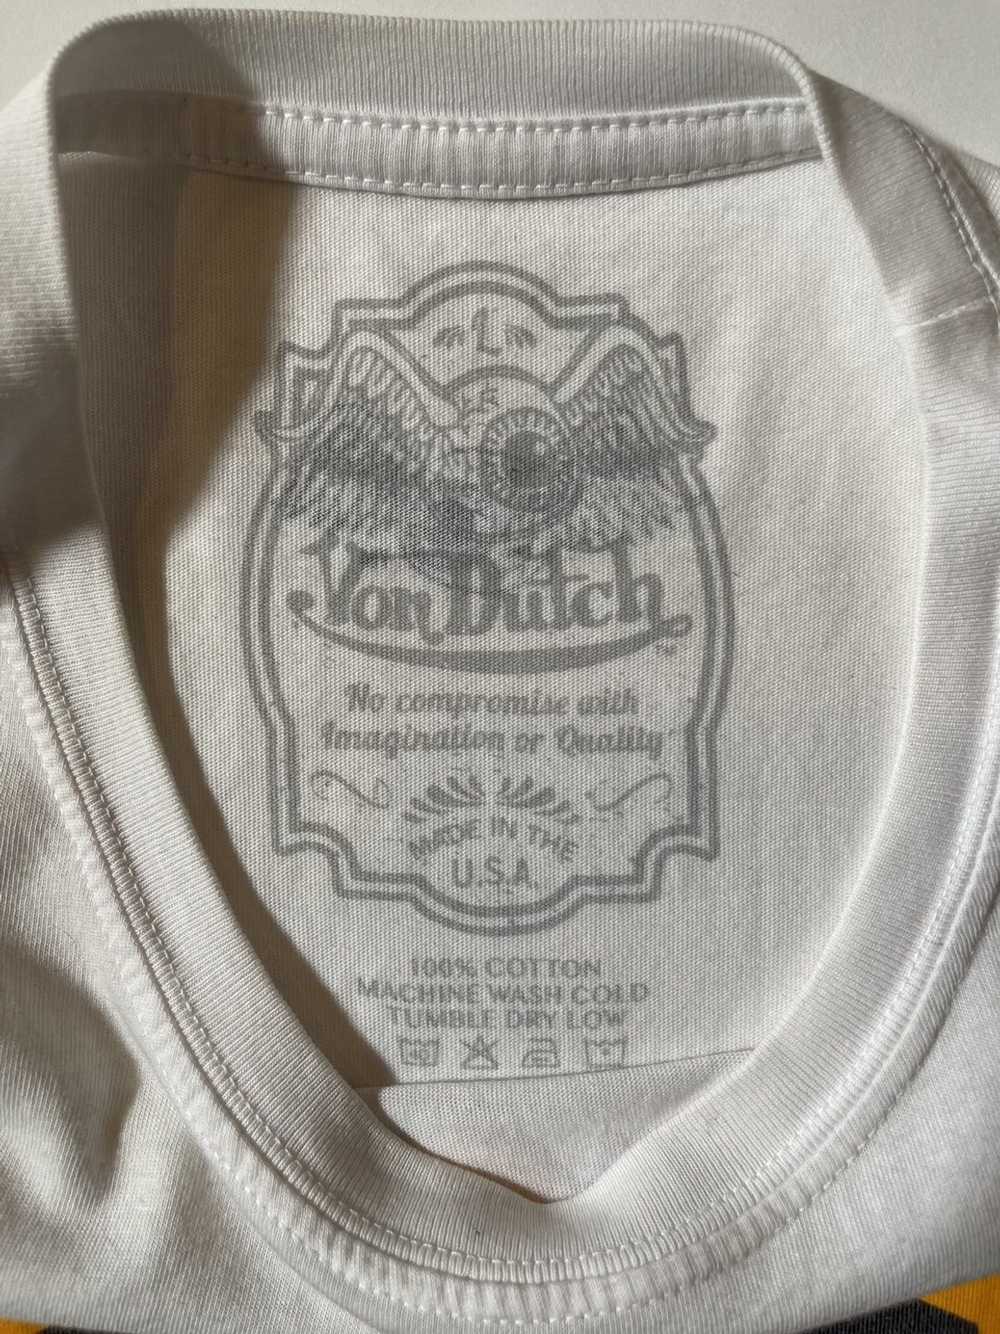 Von Dutch von dutch t shirt / white / size large - image 3